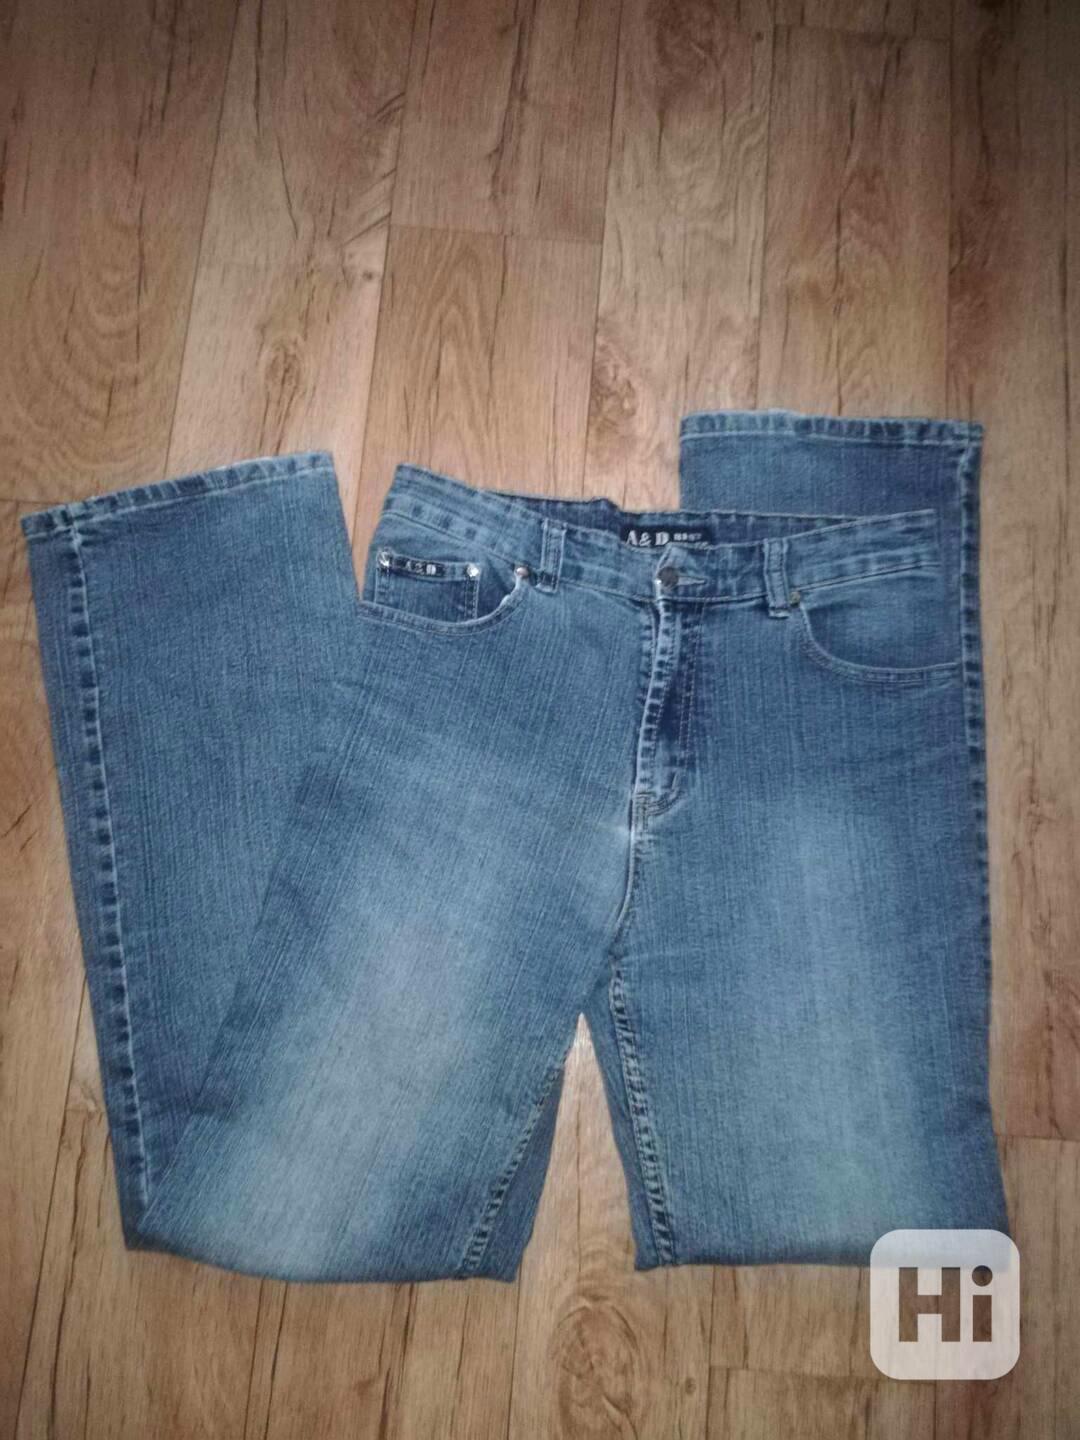 bavlněné džíny A&D vel.32 - foto 1